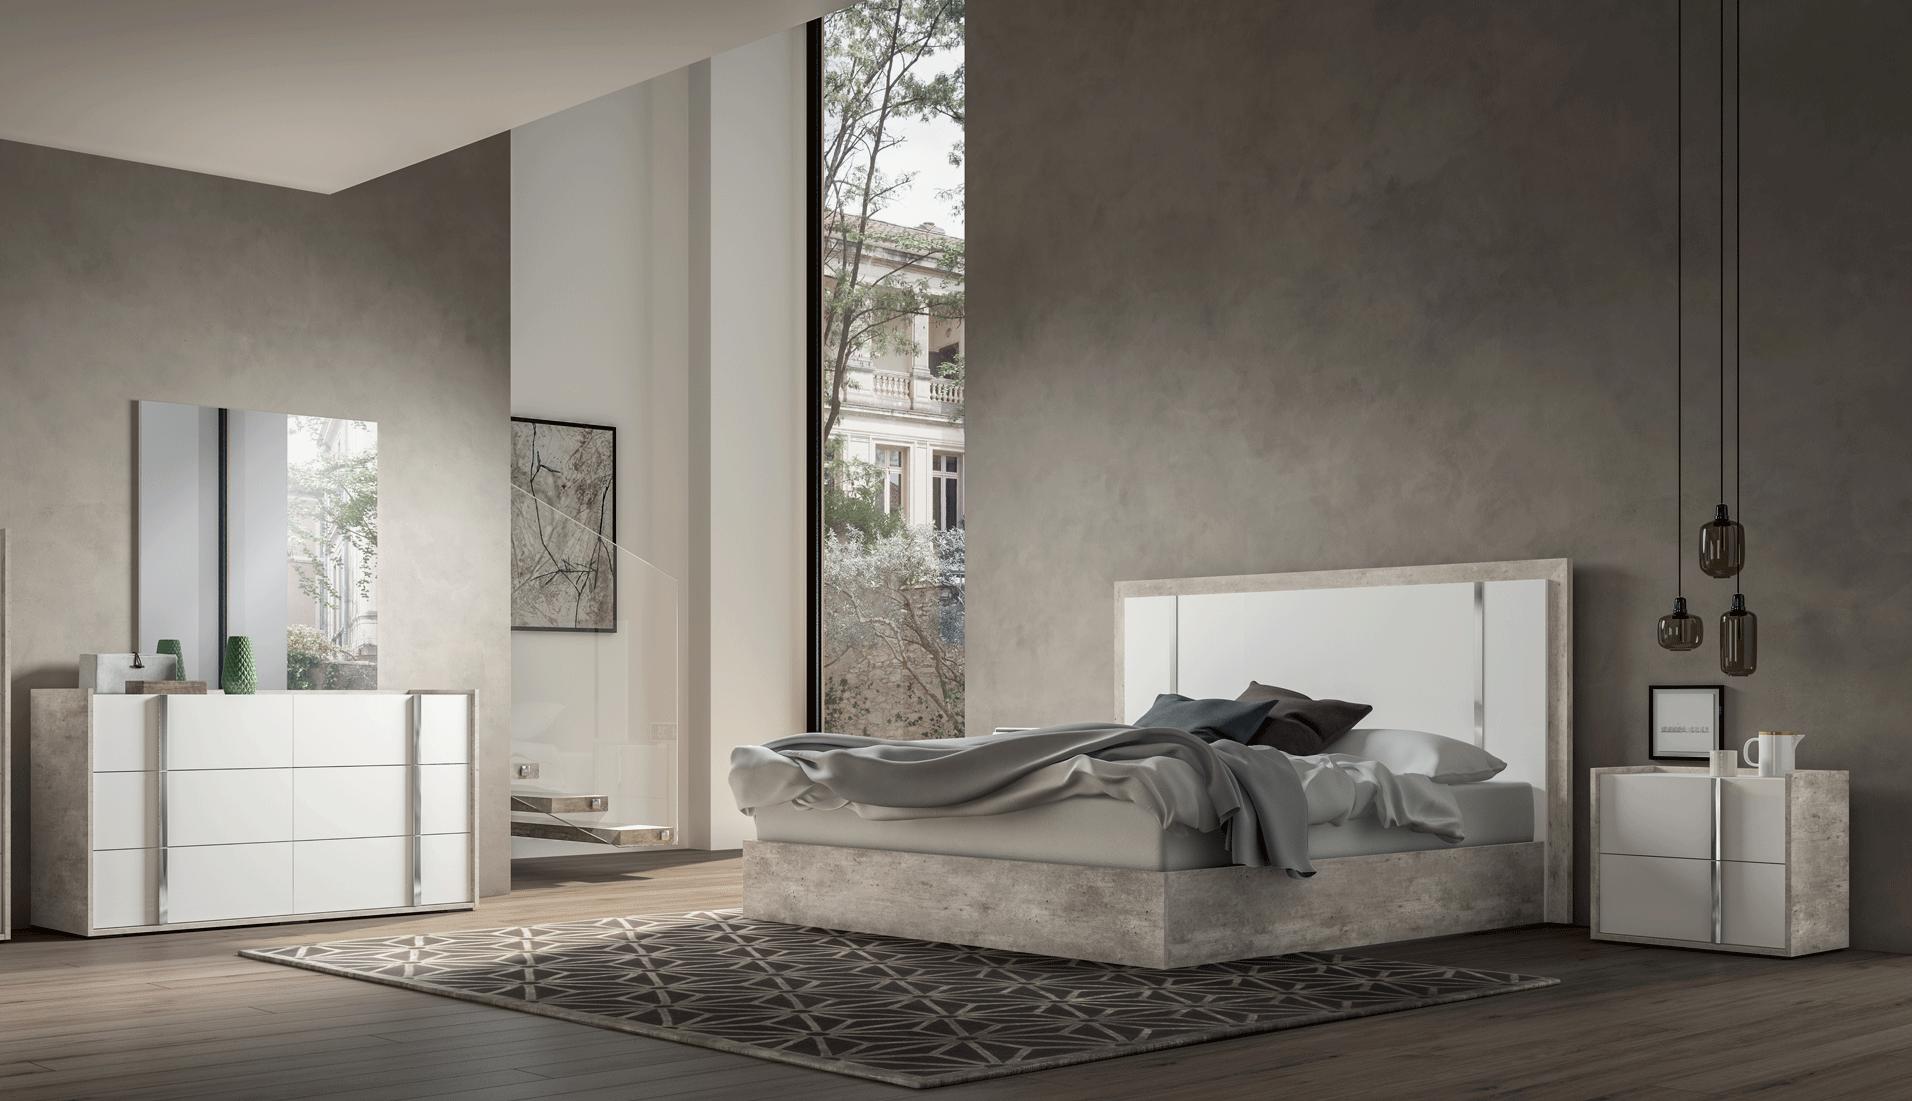 Contemporary, Modern Platform Bedroom Set Treviso Treviso-EK-2NDM-5PC in White, Gray 